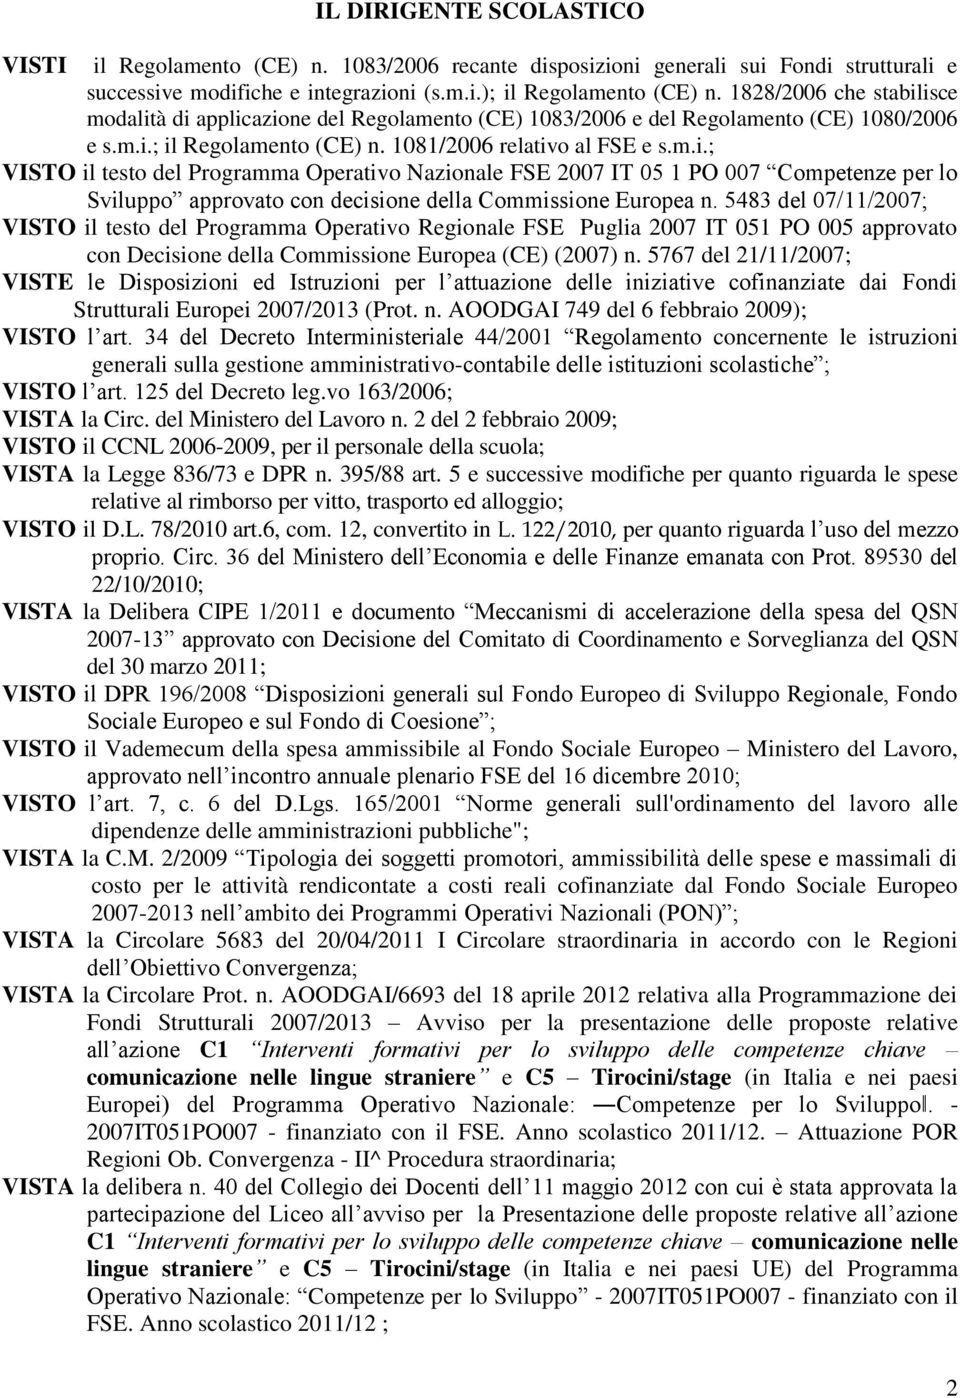 5483 del 07/11/2007; VISTO il testo del Programma Operativo Regionale FSE Puglia 2007 IT 051 PO 005 approvato con Decisione della Commissione Europea (CE) (2007) n.